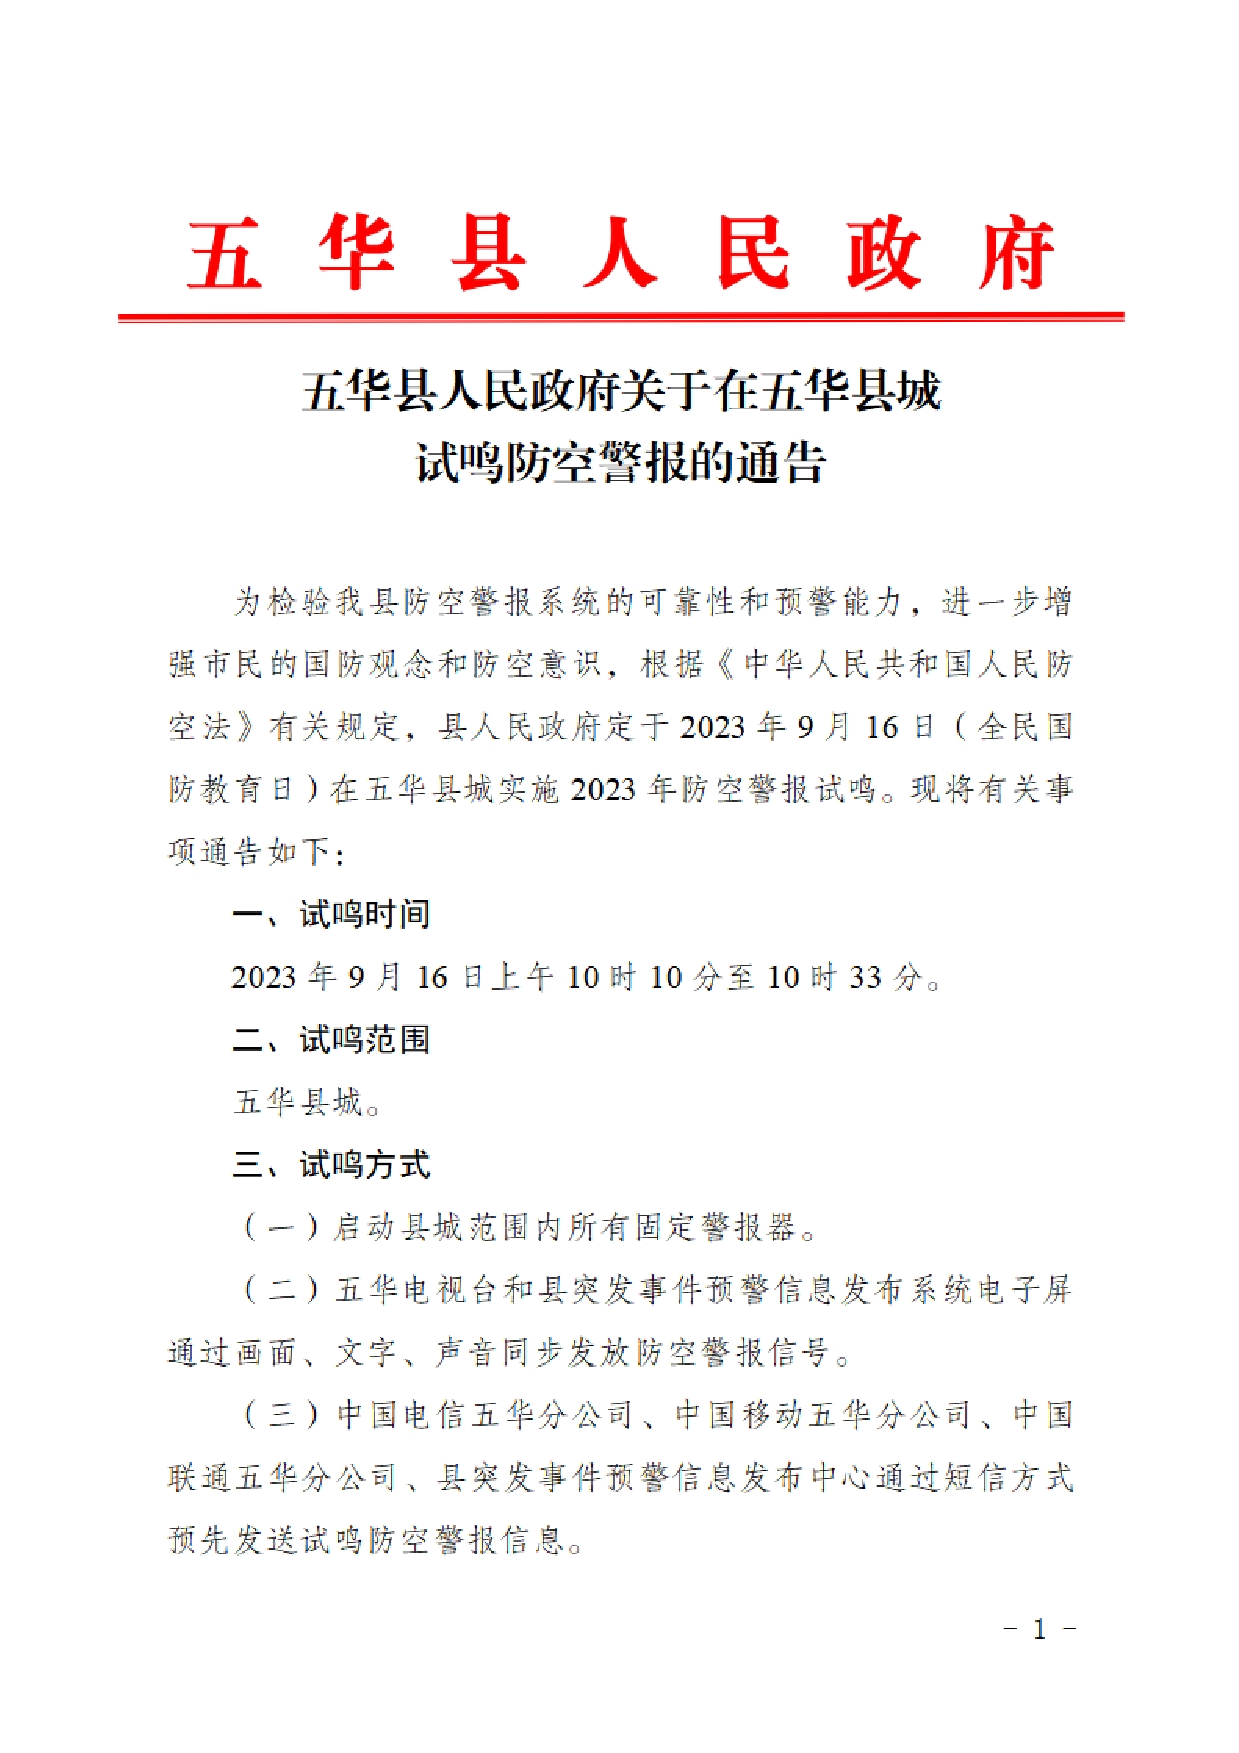 五华县人民政府关于在五华县城试鸣防空警报的通告0000.jpg